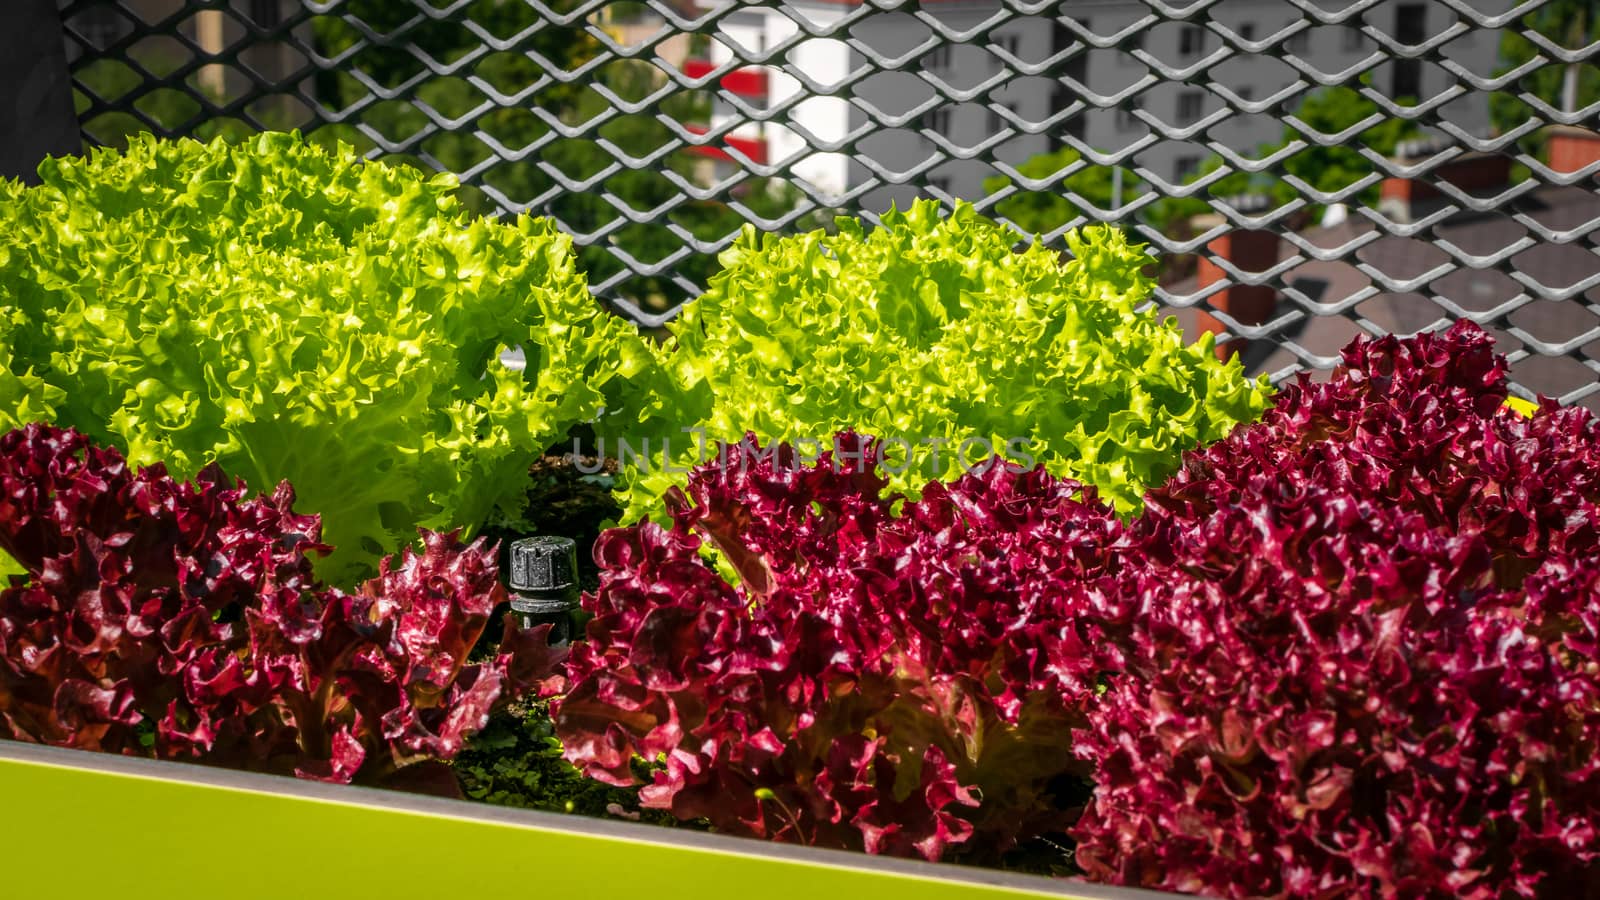 Urban gardening - Lollo bionda and Lollo rosso lettuce in stylish planters on a terrace in Vienna (Austria) by Umtsga